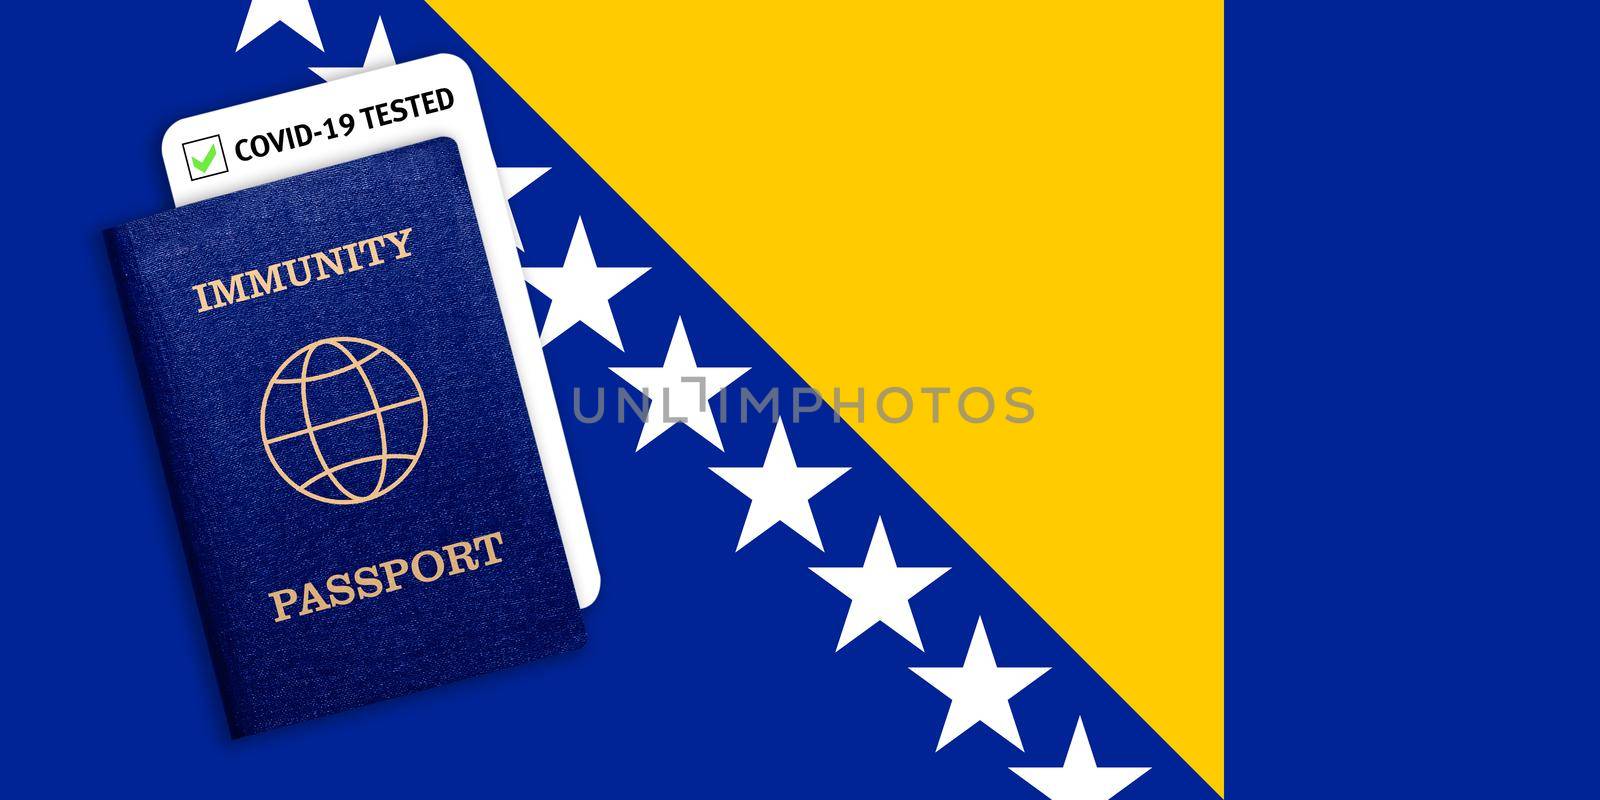 Immunity passport and coronavirus test with flag of Bosnia and Herzegovina by galinasharapova